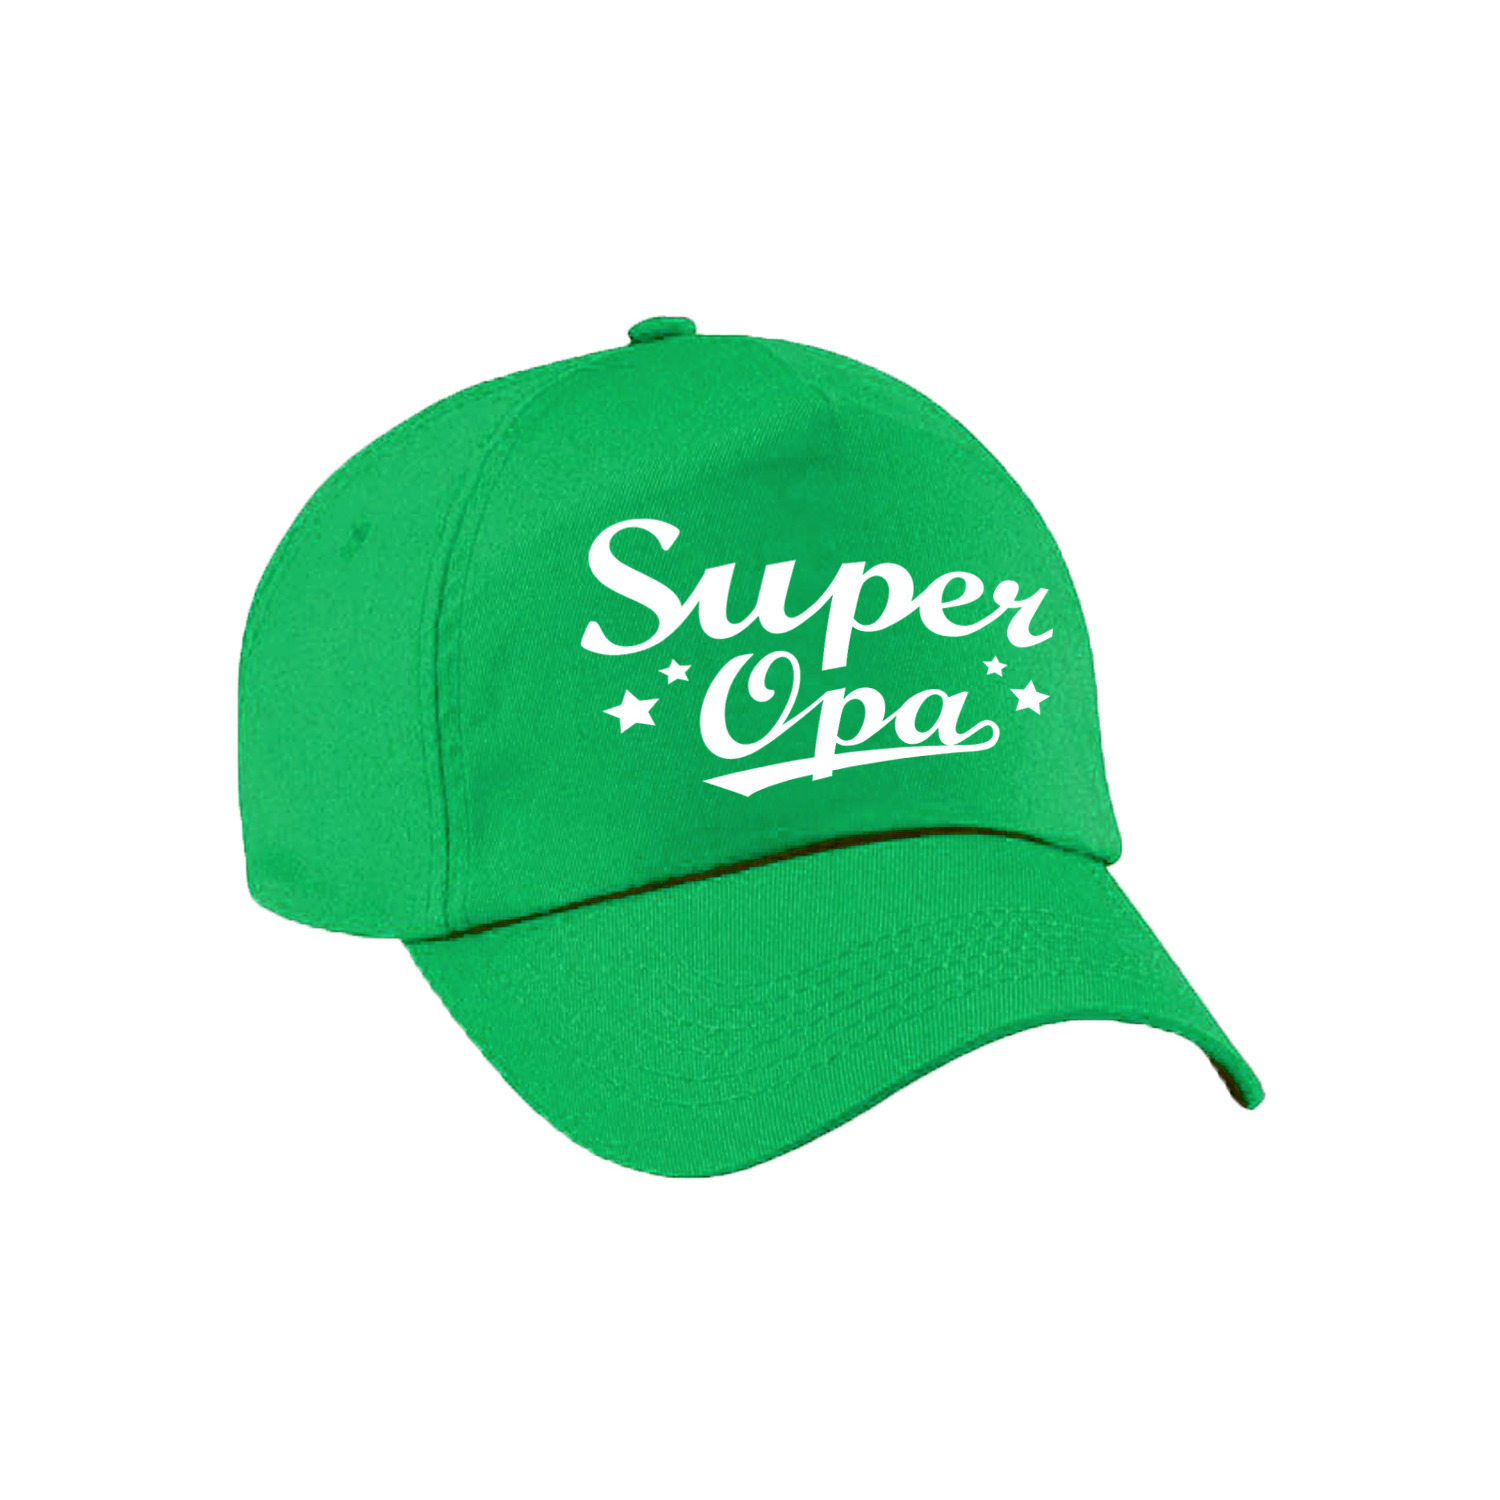 Super opa cadeau pet /cap groen voor volwassenen